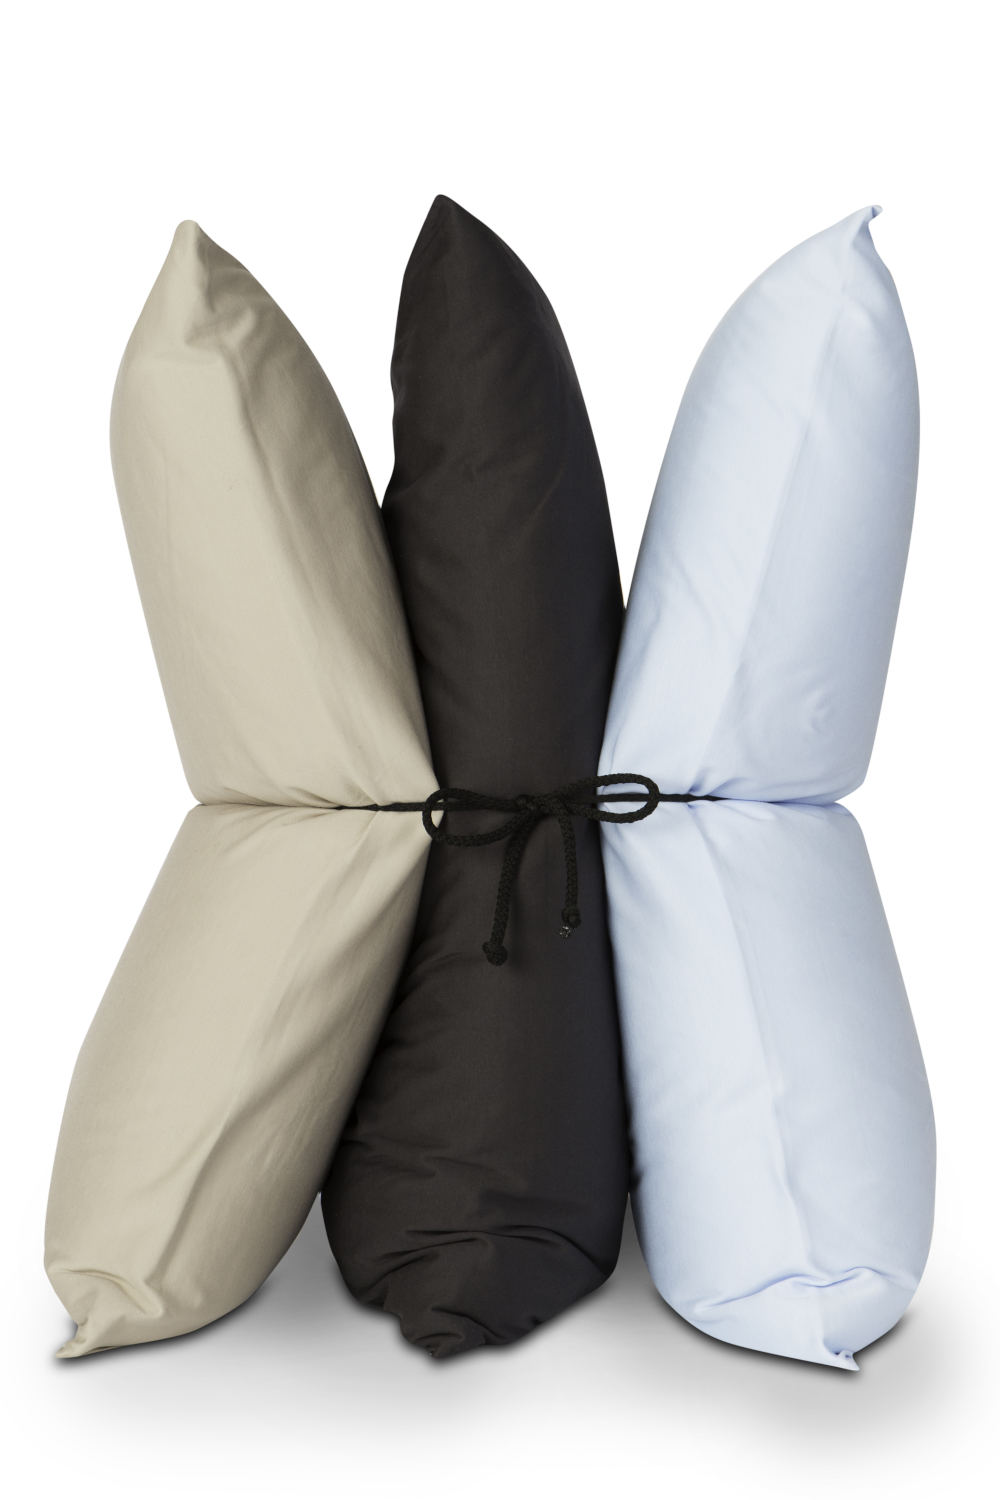 Formesse Kissenbezug Jersey aus Baumwolle, bügelfrei, 40x40 cm 